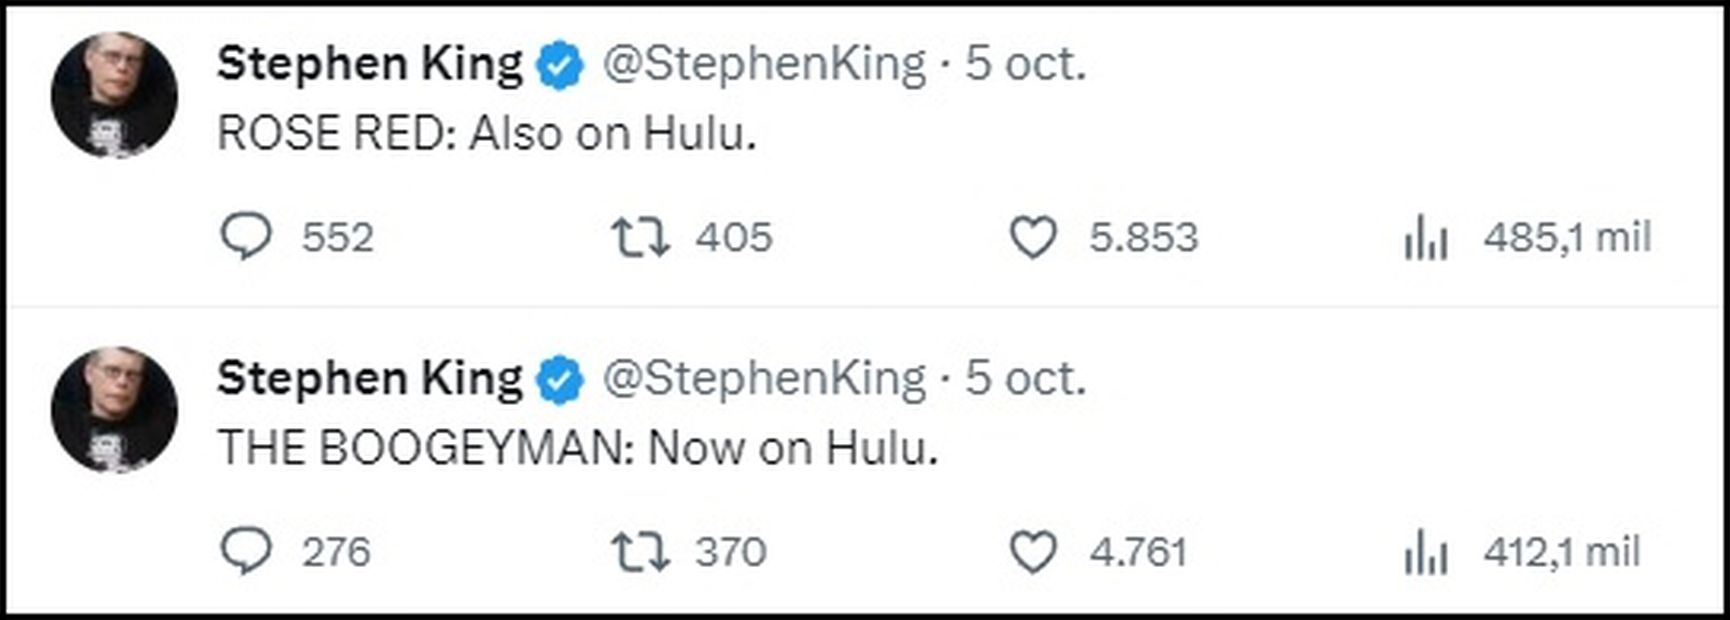 Tuit de Stephen King. Fuente: Twitter